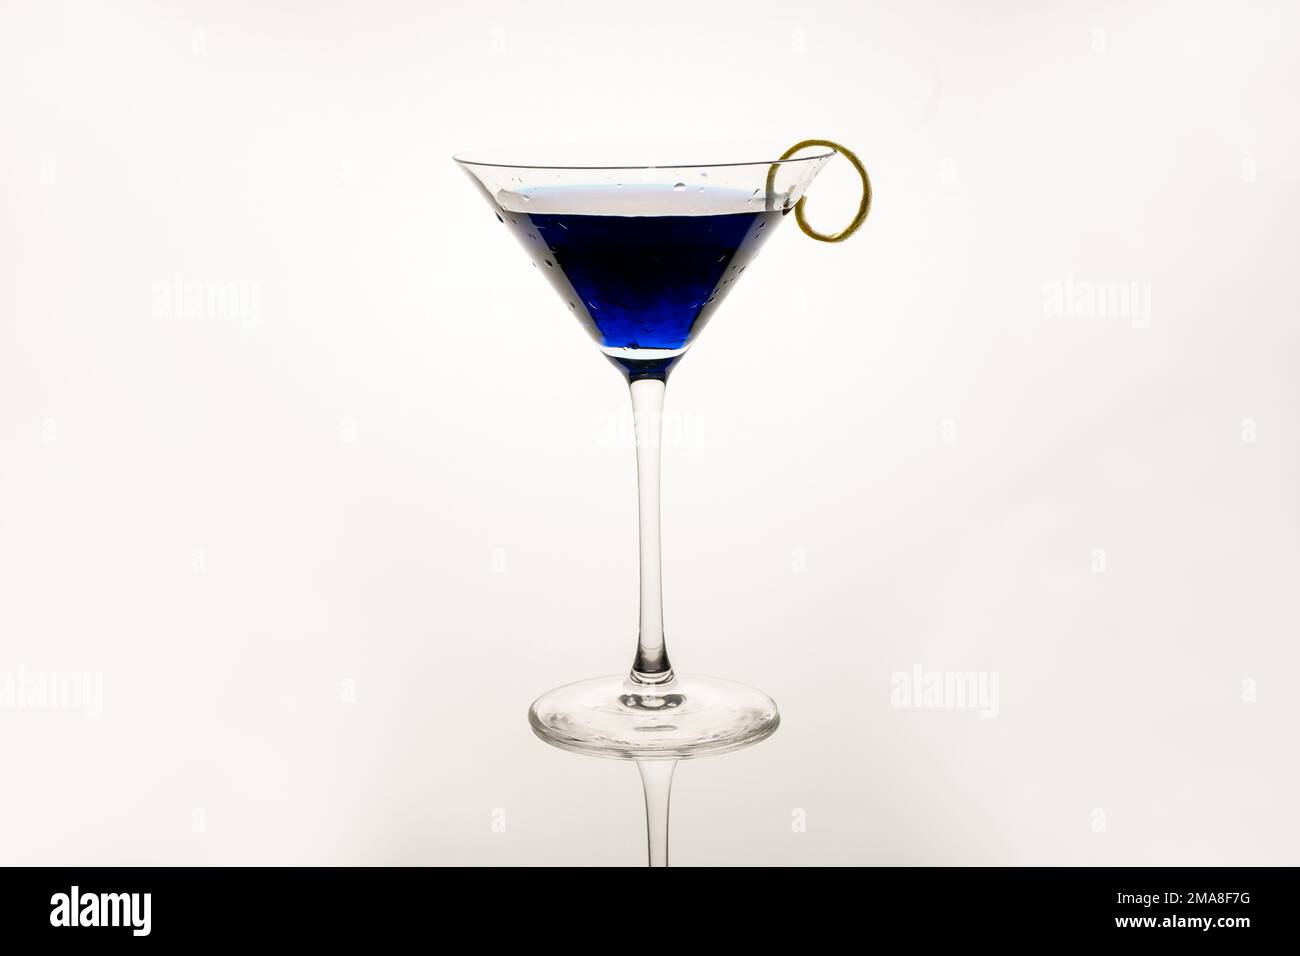 Royal Blue Martini servi avec une touche de citron isolée sur un fond blanc Banque D'Images